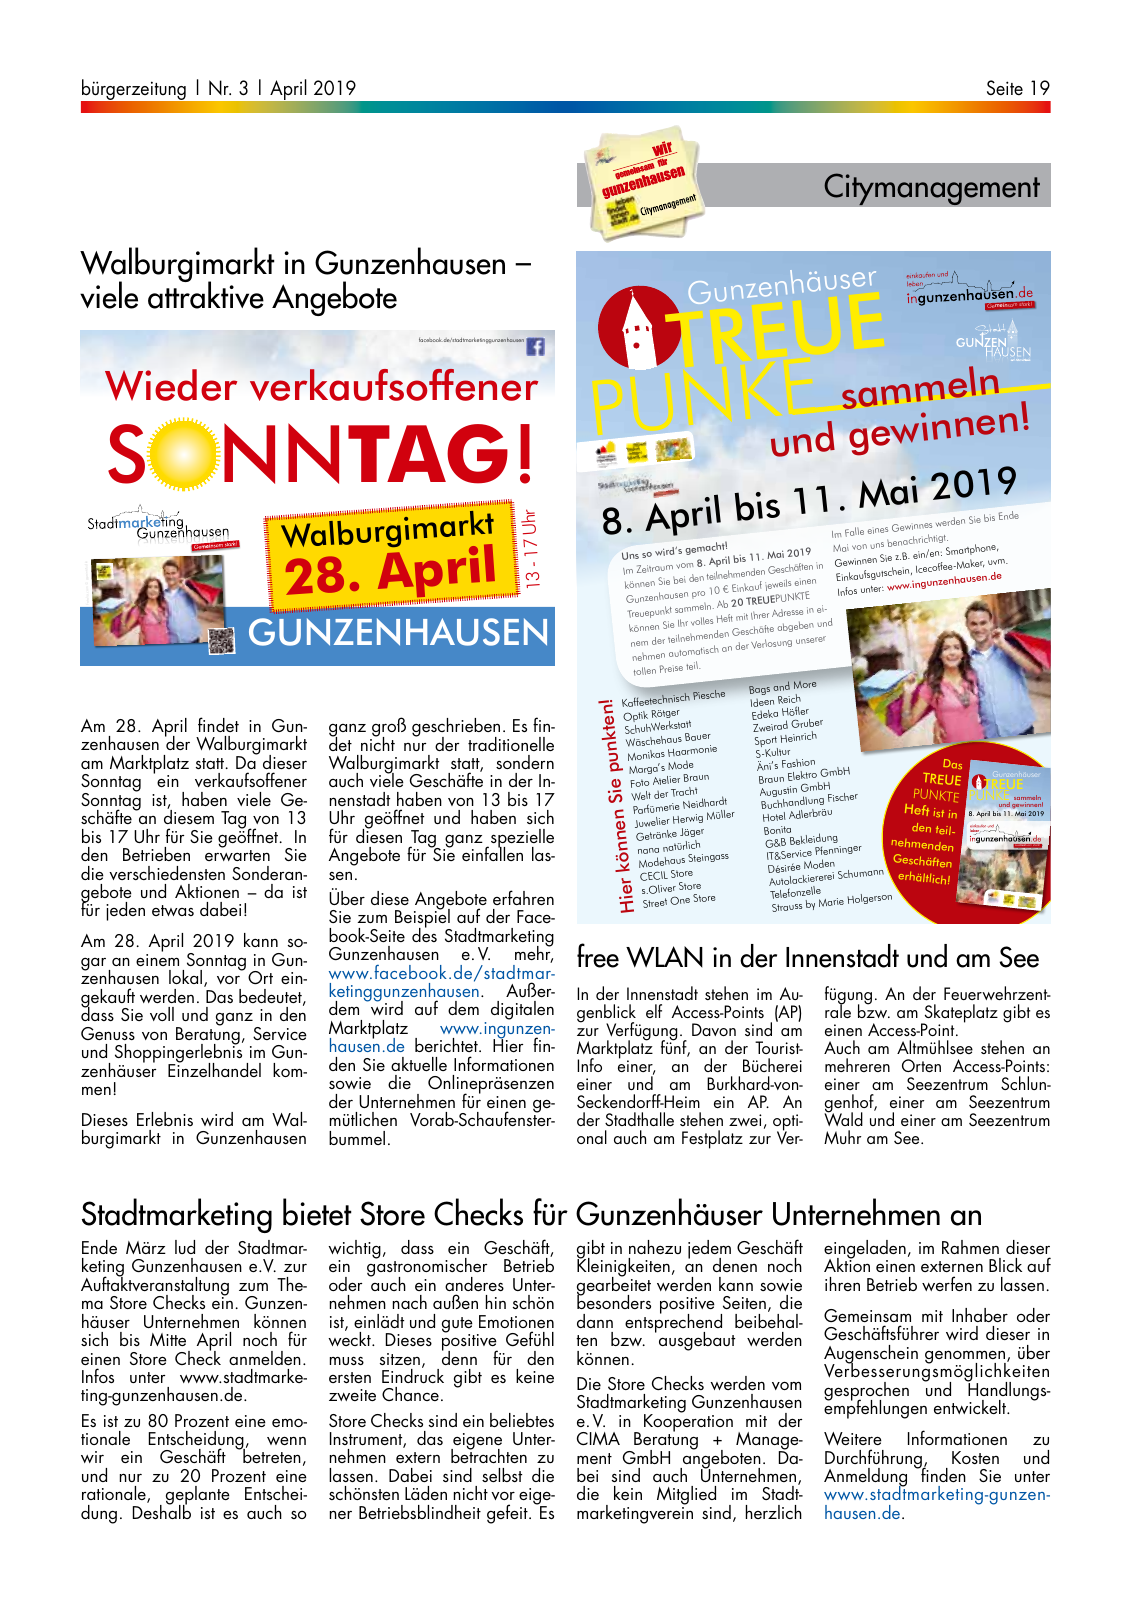 Vorschau buergerzeitung_03_2019 Seite 19